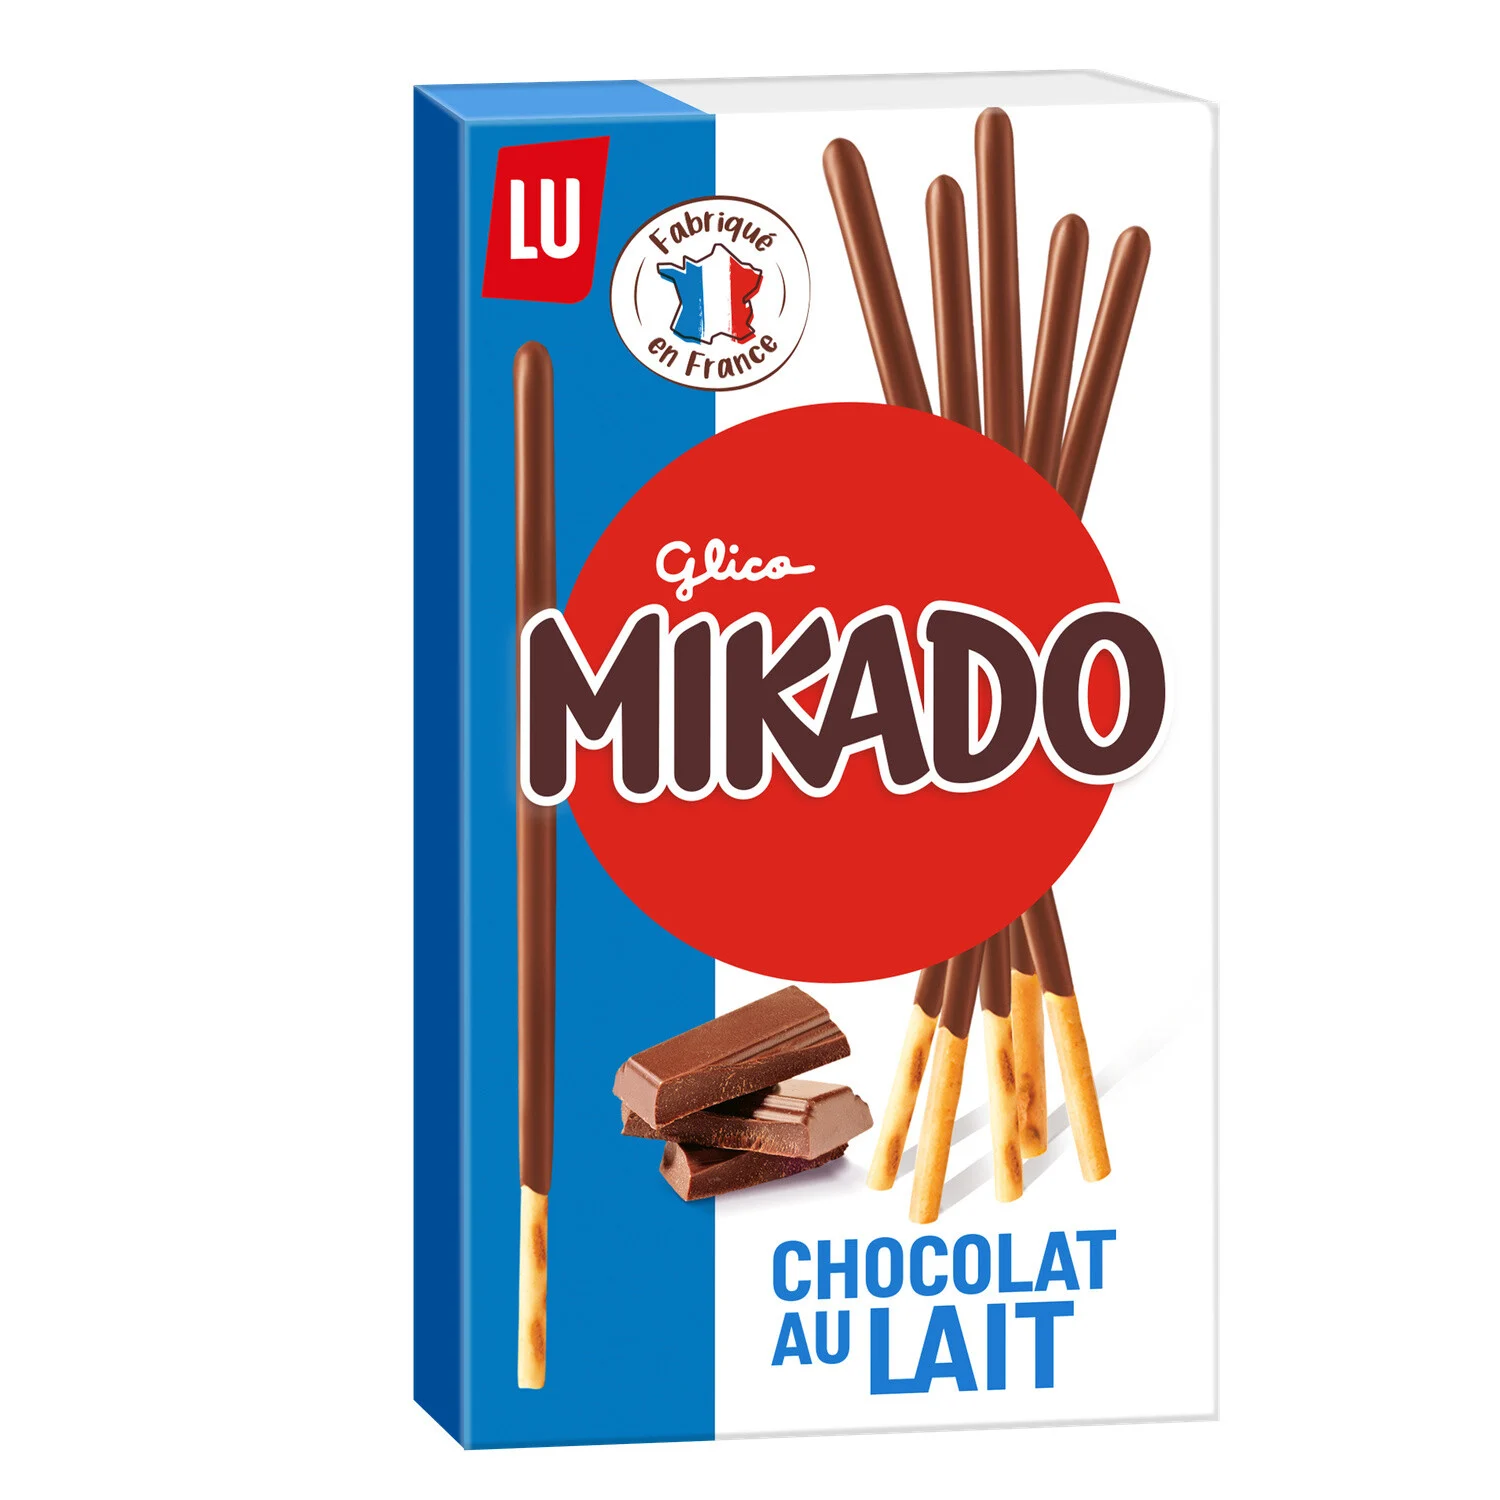 90g Mikado Chocolate ao Leite Lu